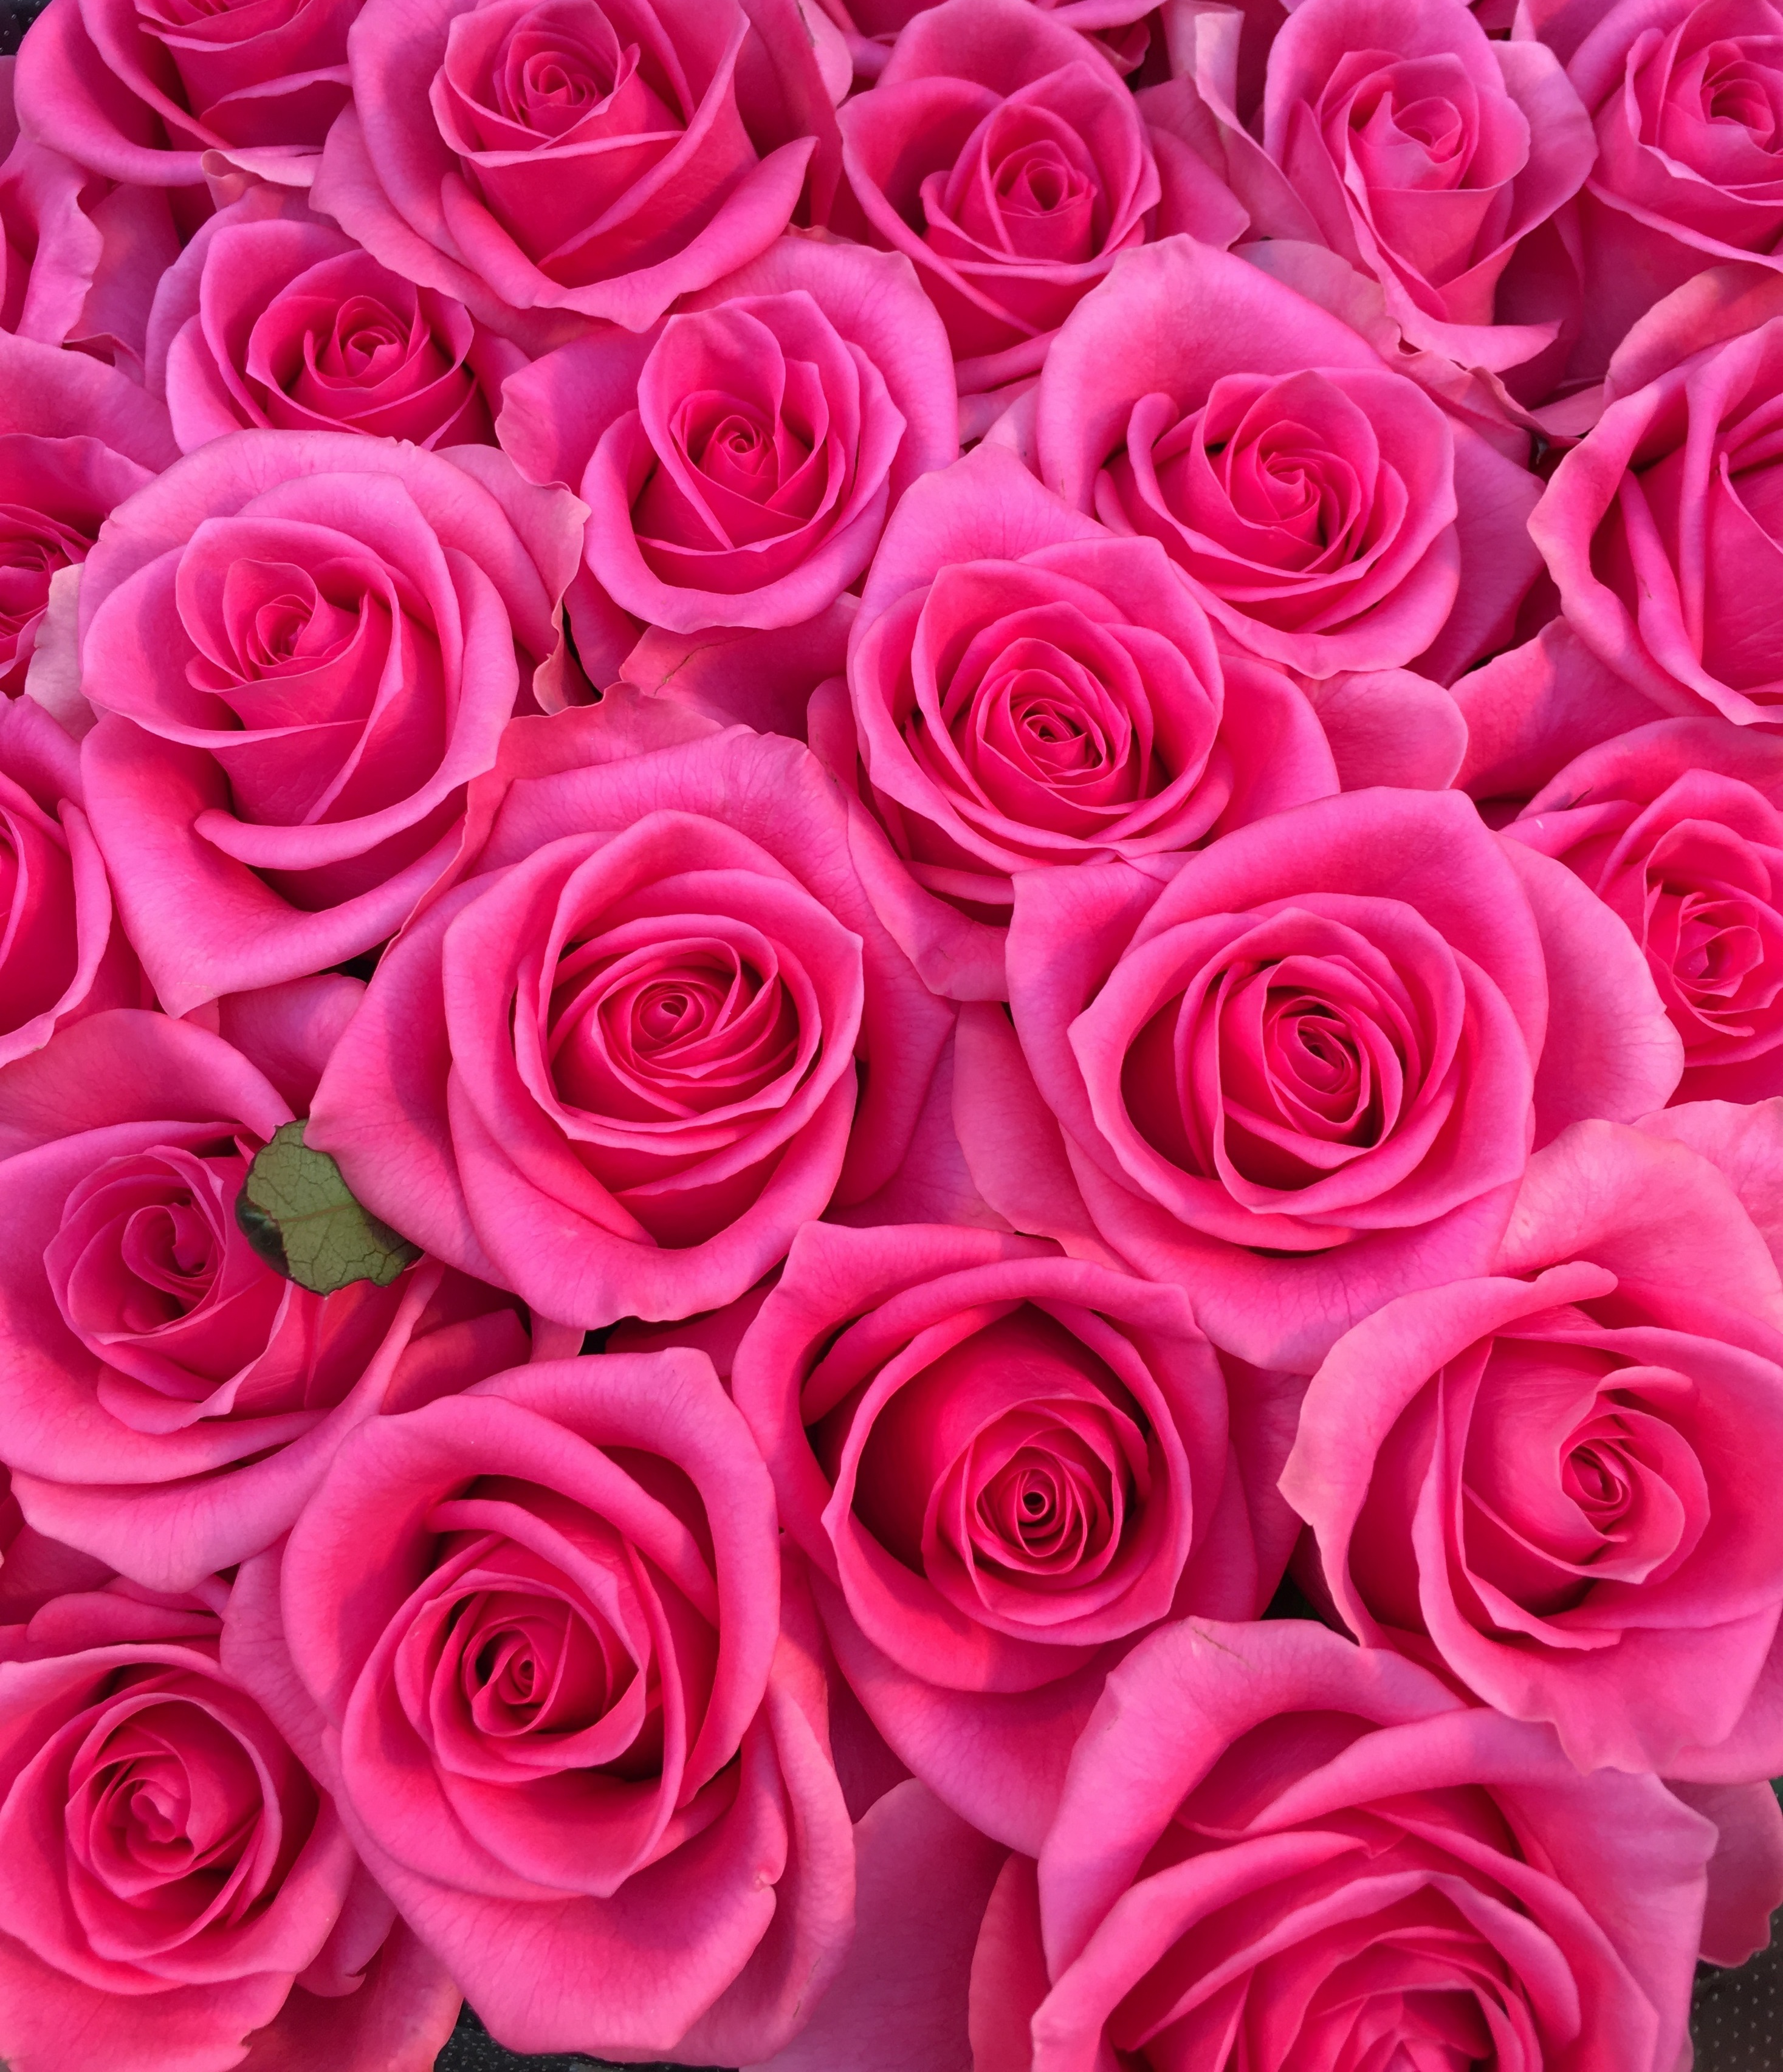 花屋 Hanaya Pinkrose 可愛い人 100本のバラ 100 の愛情 特別な花束 福岡県北九州市小倉北区のフラワーショップです フラワースタンド バルーン フラワーアレンジメント 胡蝶蘭などギフト商品も取り扱っております